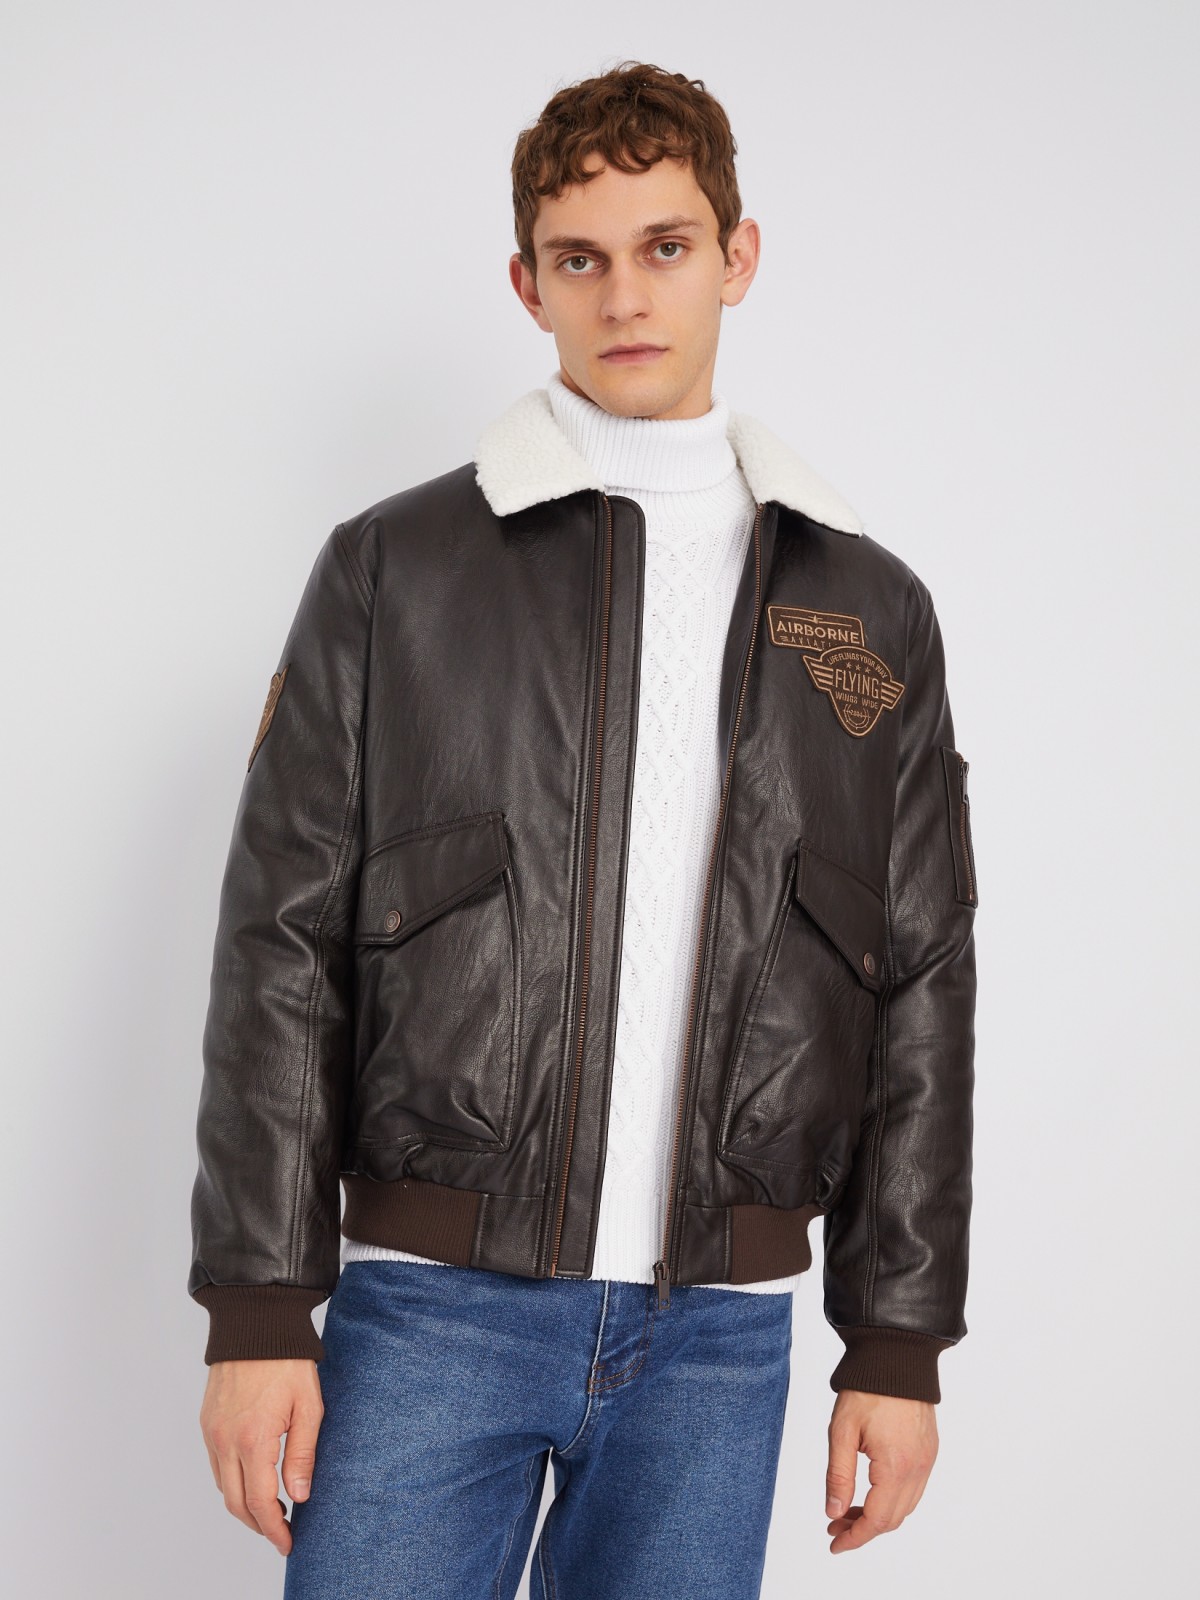 Тёплая куртка-авиатор из экокожи на синтепоне с отделкой из экомеха zolla 013345102034, цвет коричневый, размер M